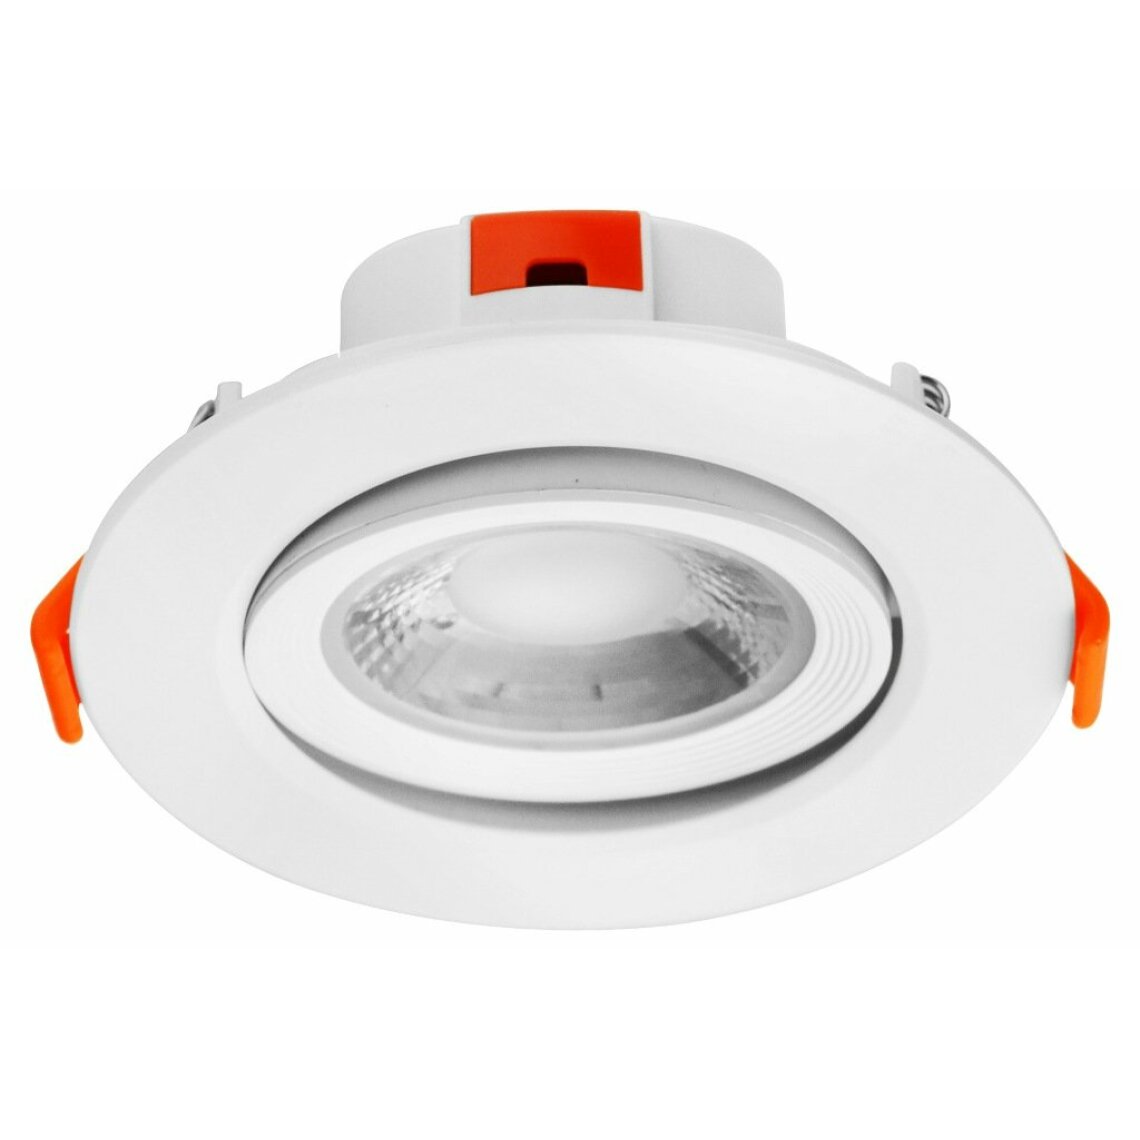 Lampesecoenergie - Spot LED encastrable pour plafond 15W Blanc Neutre 1275lm transformateur intégré - Moulures et goulottes